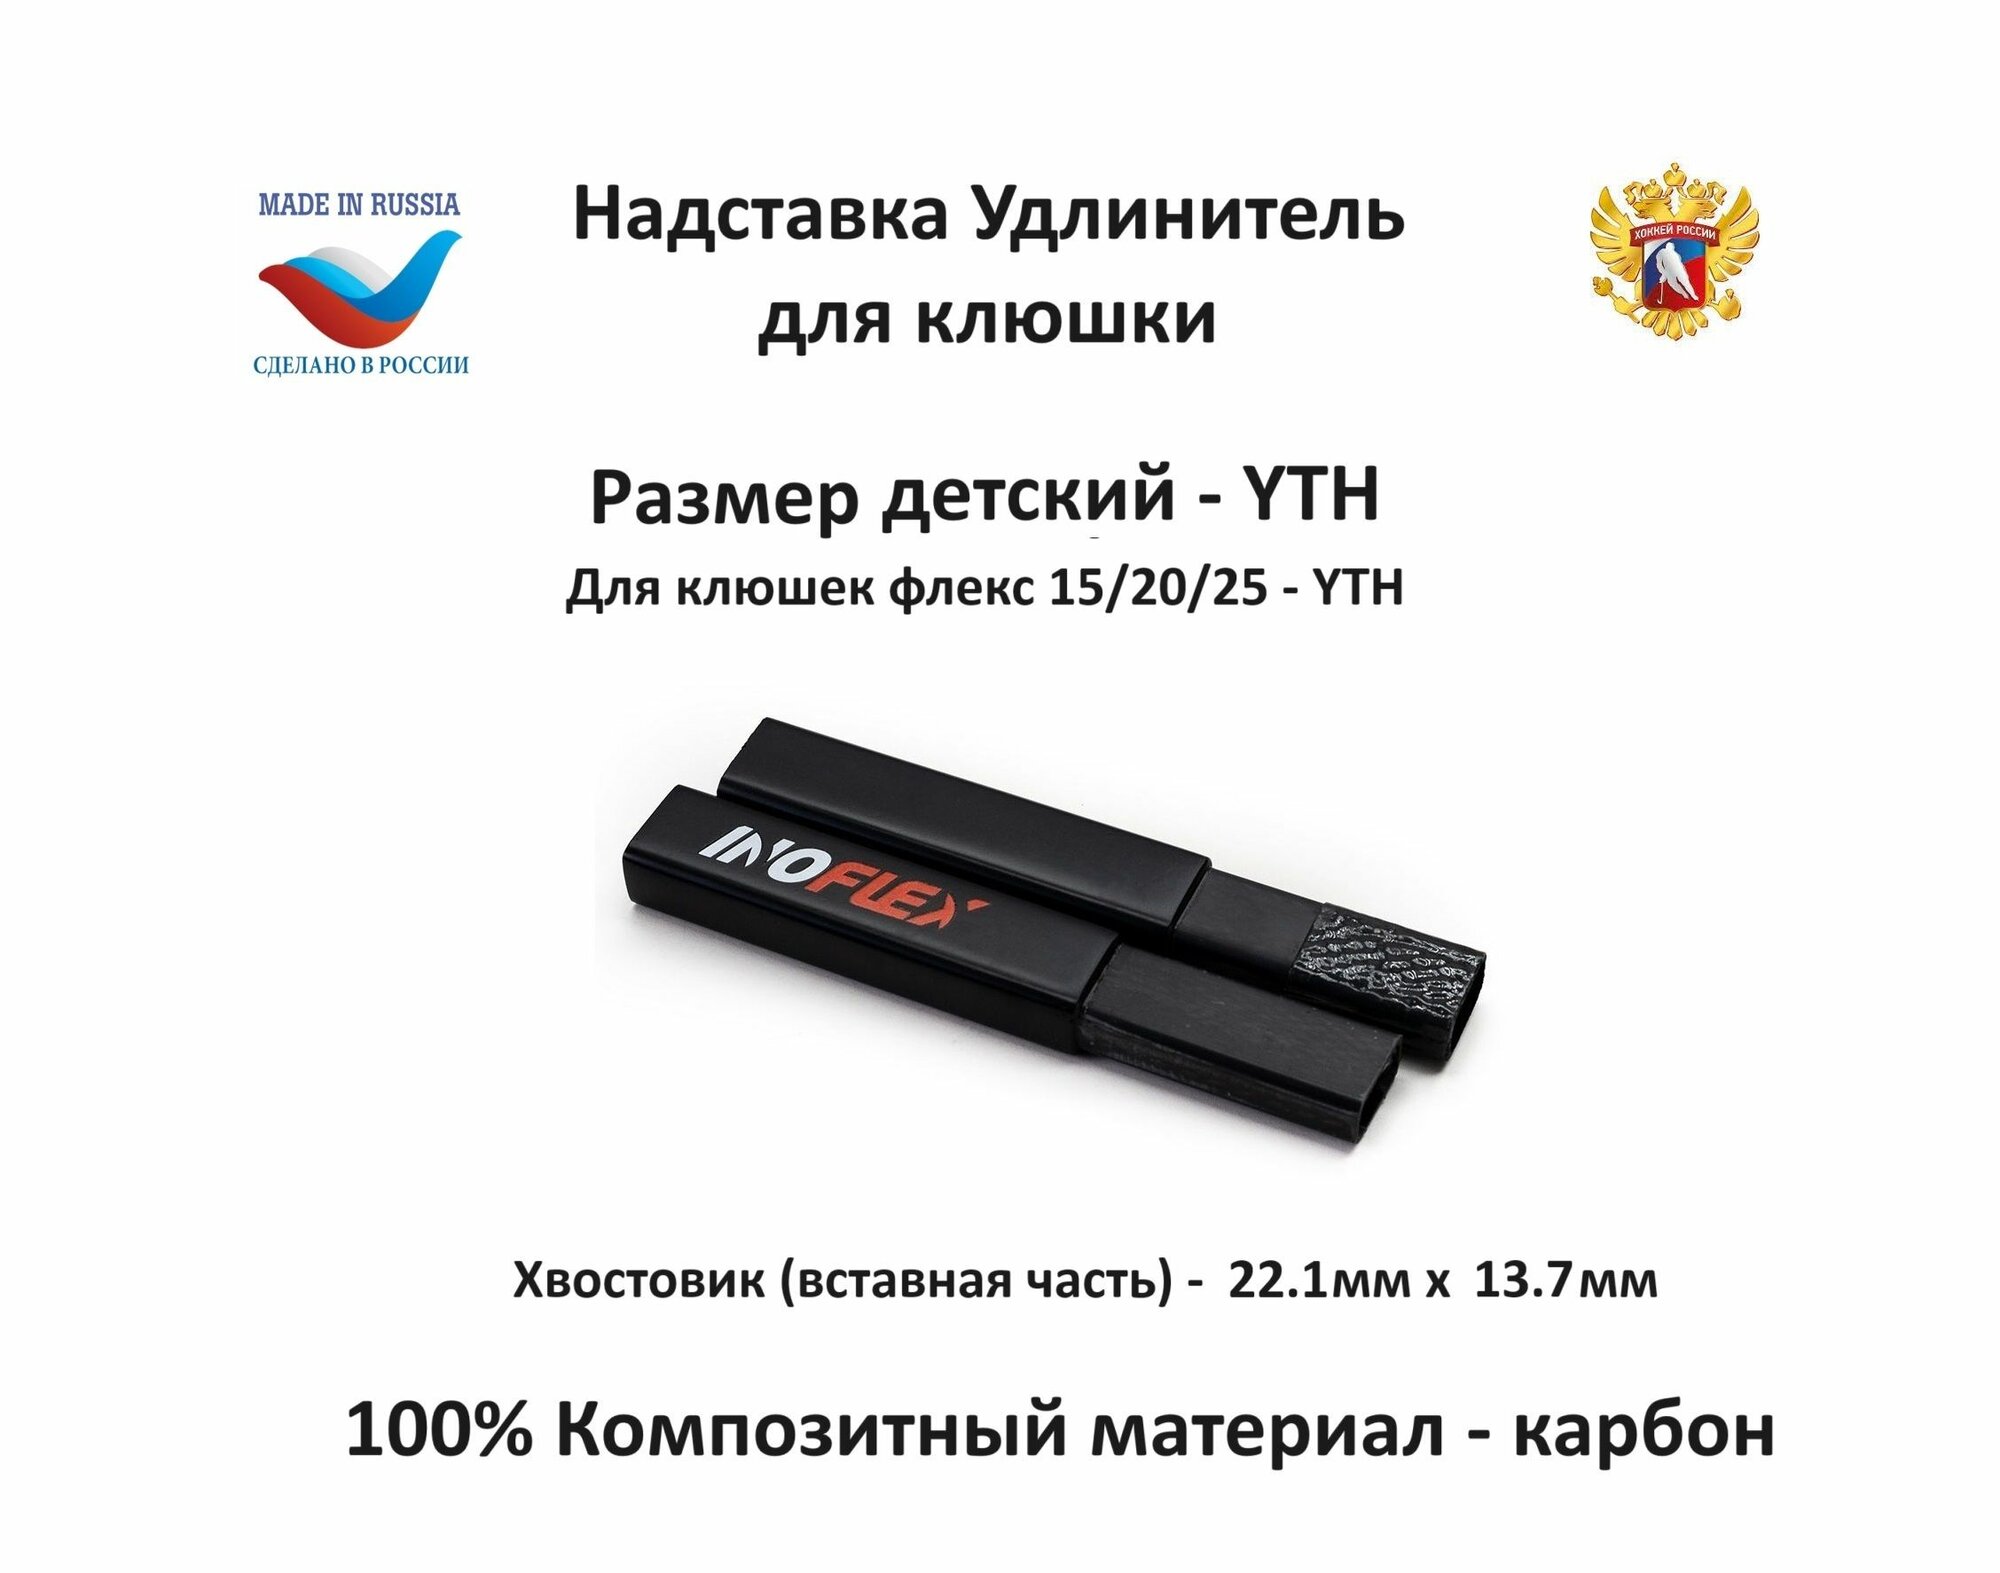 Надставка удлинитель для клюшки Inoflex YTH F15/20/25